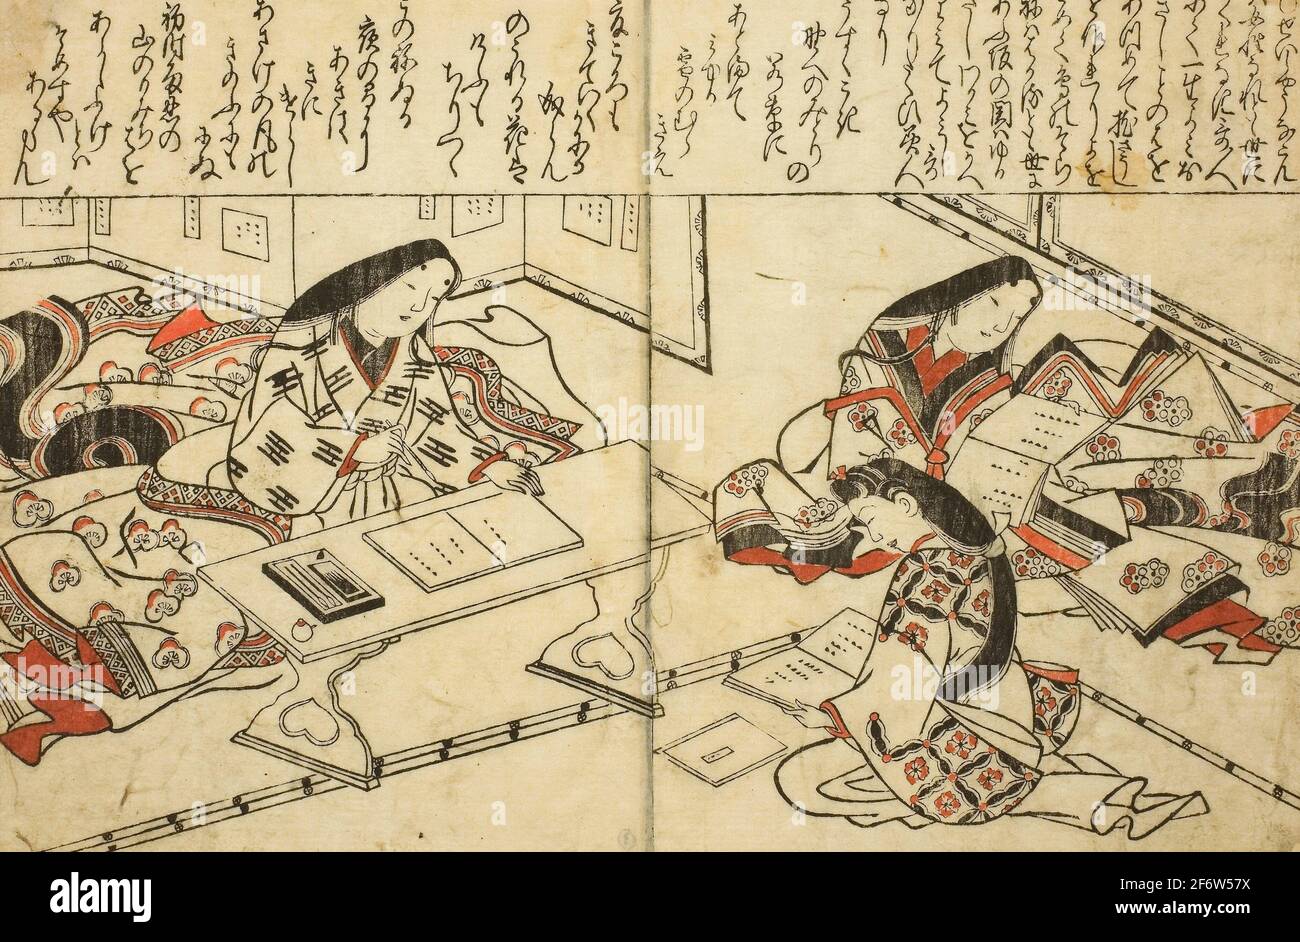 Autor: Hishikawa Moronobu. SEI Shonagon, del libro ilustrado 'Colección de Fotos de Beauties (Bijin e-zukushi)' - c. 1683 - Hishikawa Foto de stock